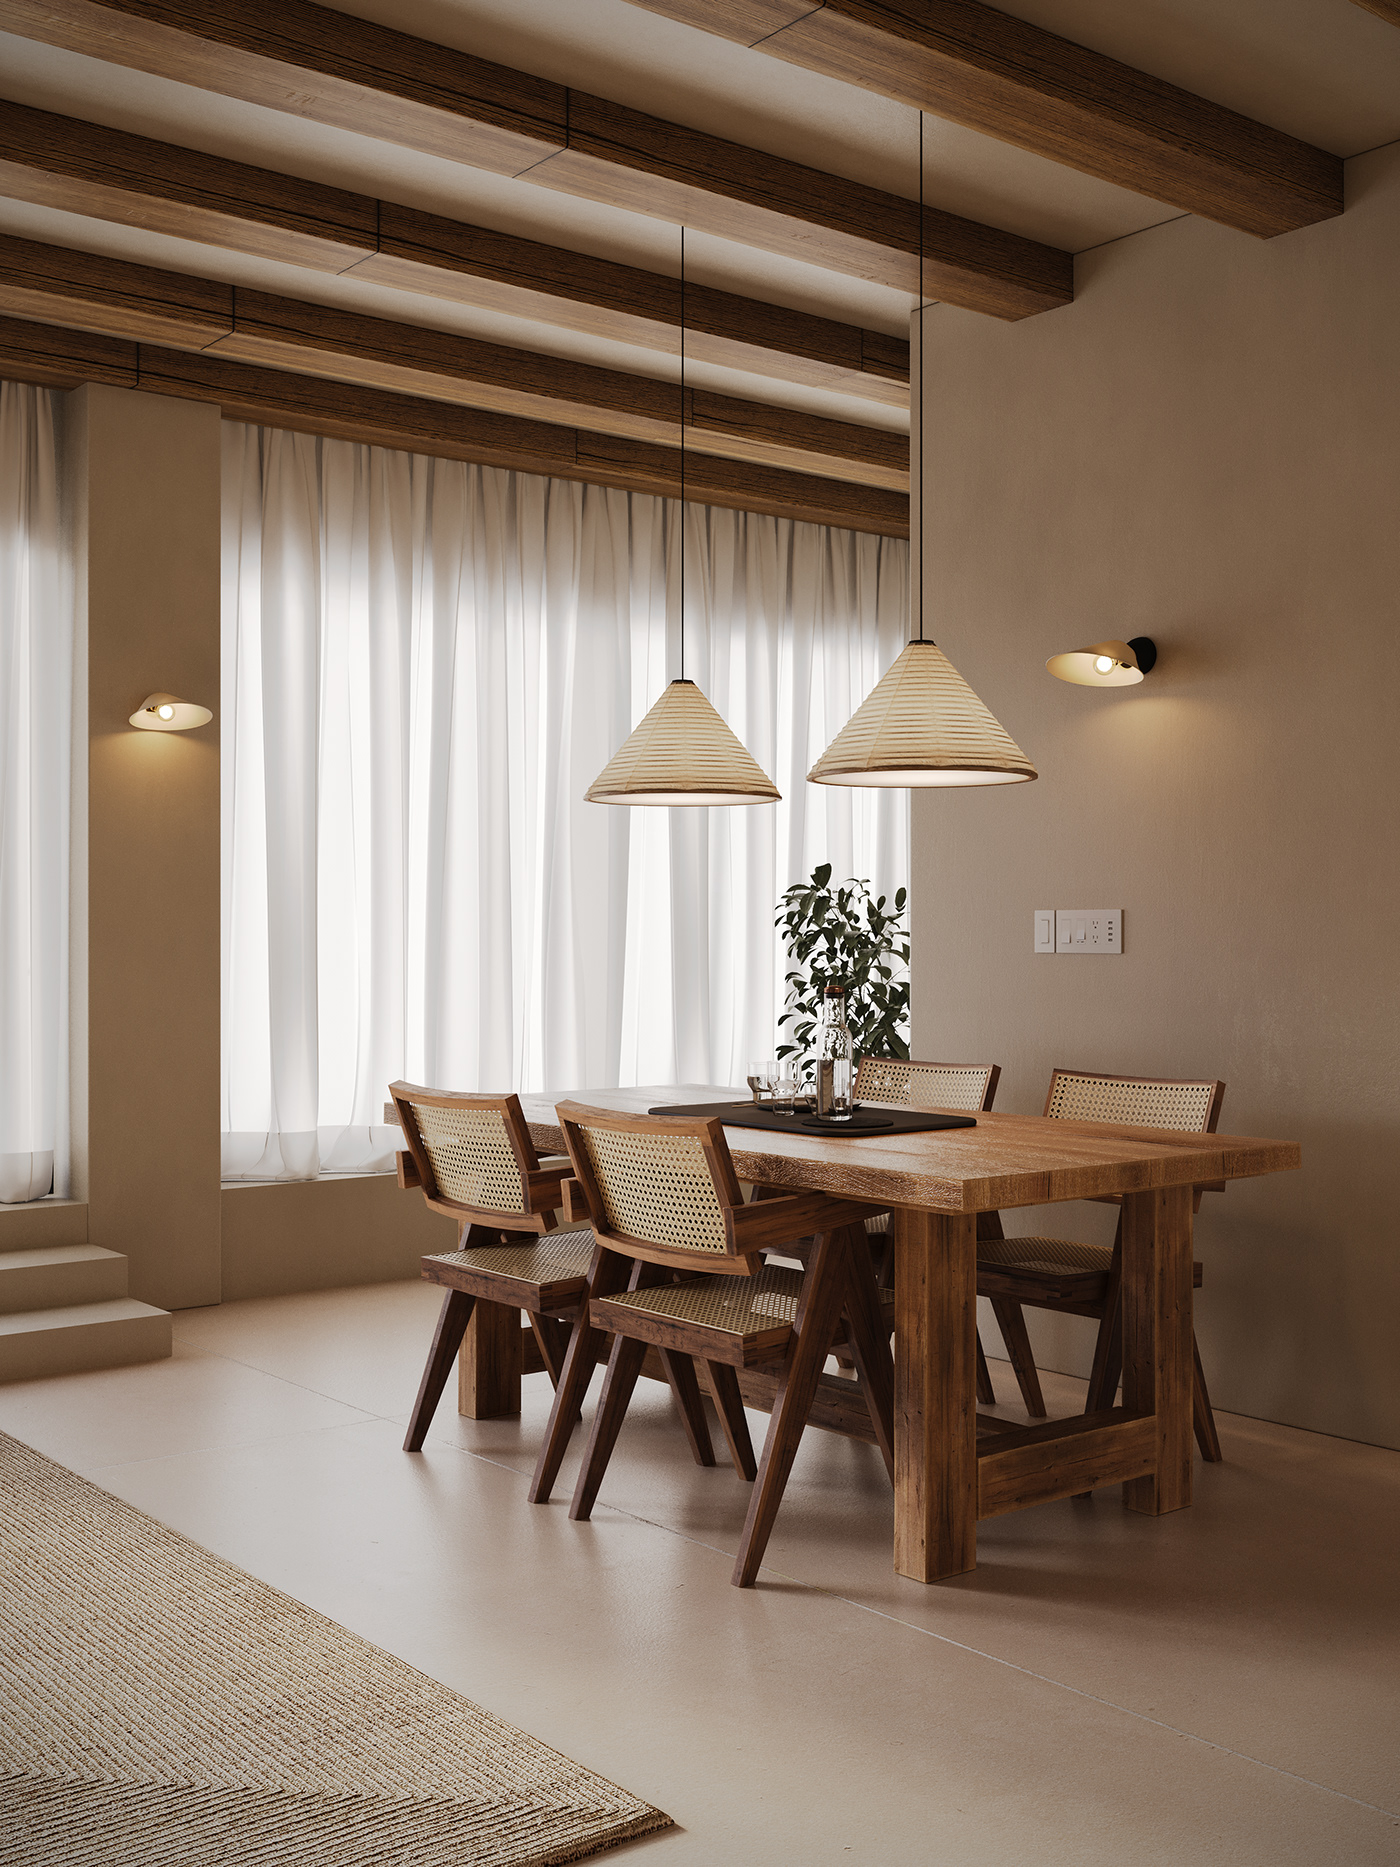 Interior architecture visualization Render interior design  modern archviz LOFT kitchen visualziation